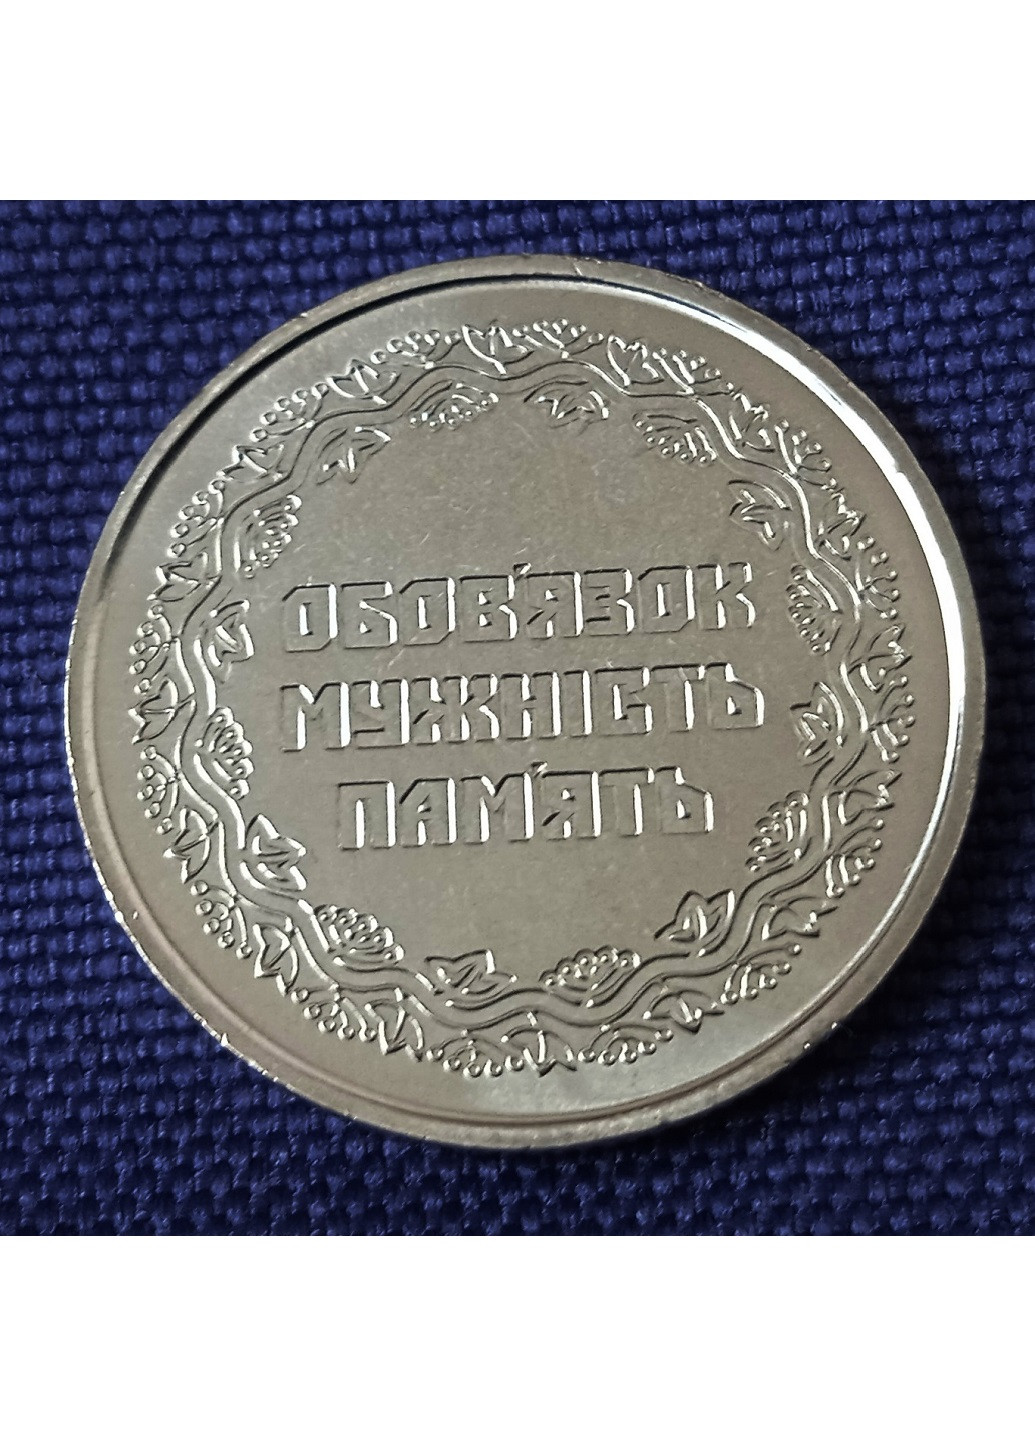 Монета Украины «Участникам боевых действий на территории других государств» Blue Orange (257210489)